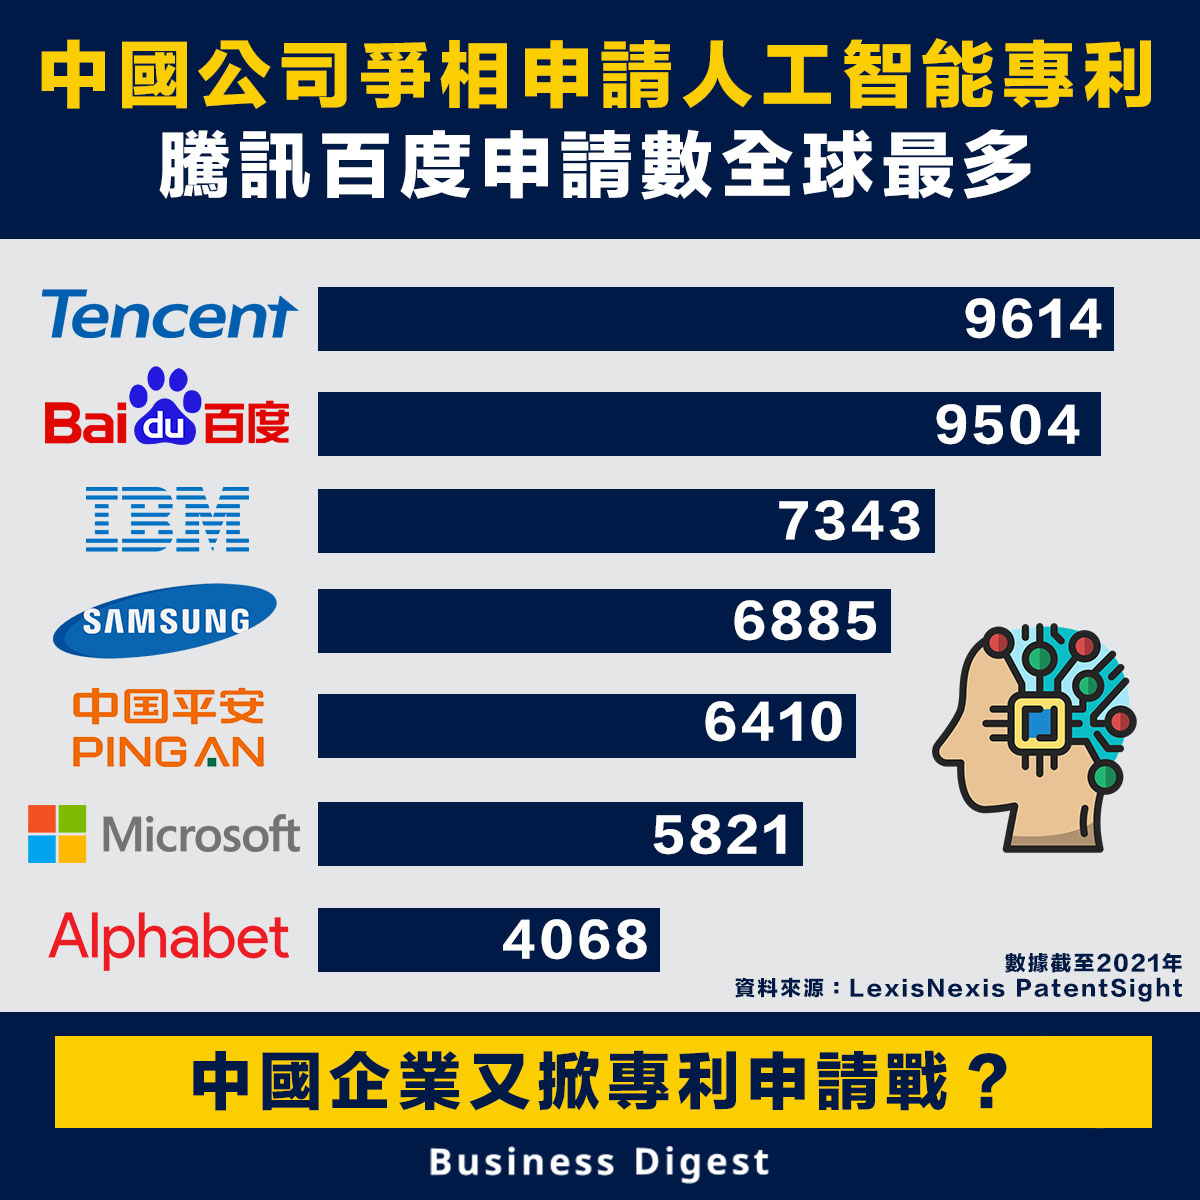 中國公司爭相申請人工智能專利 騰訊百度申請數全球最多